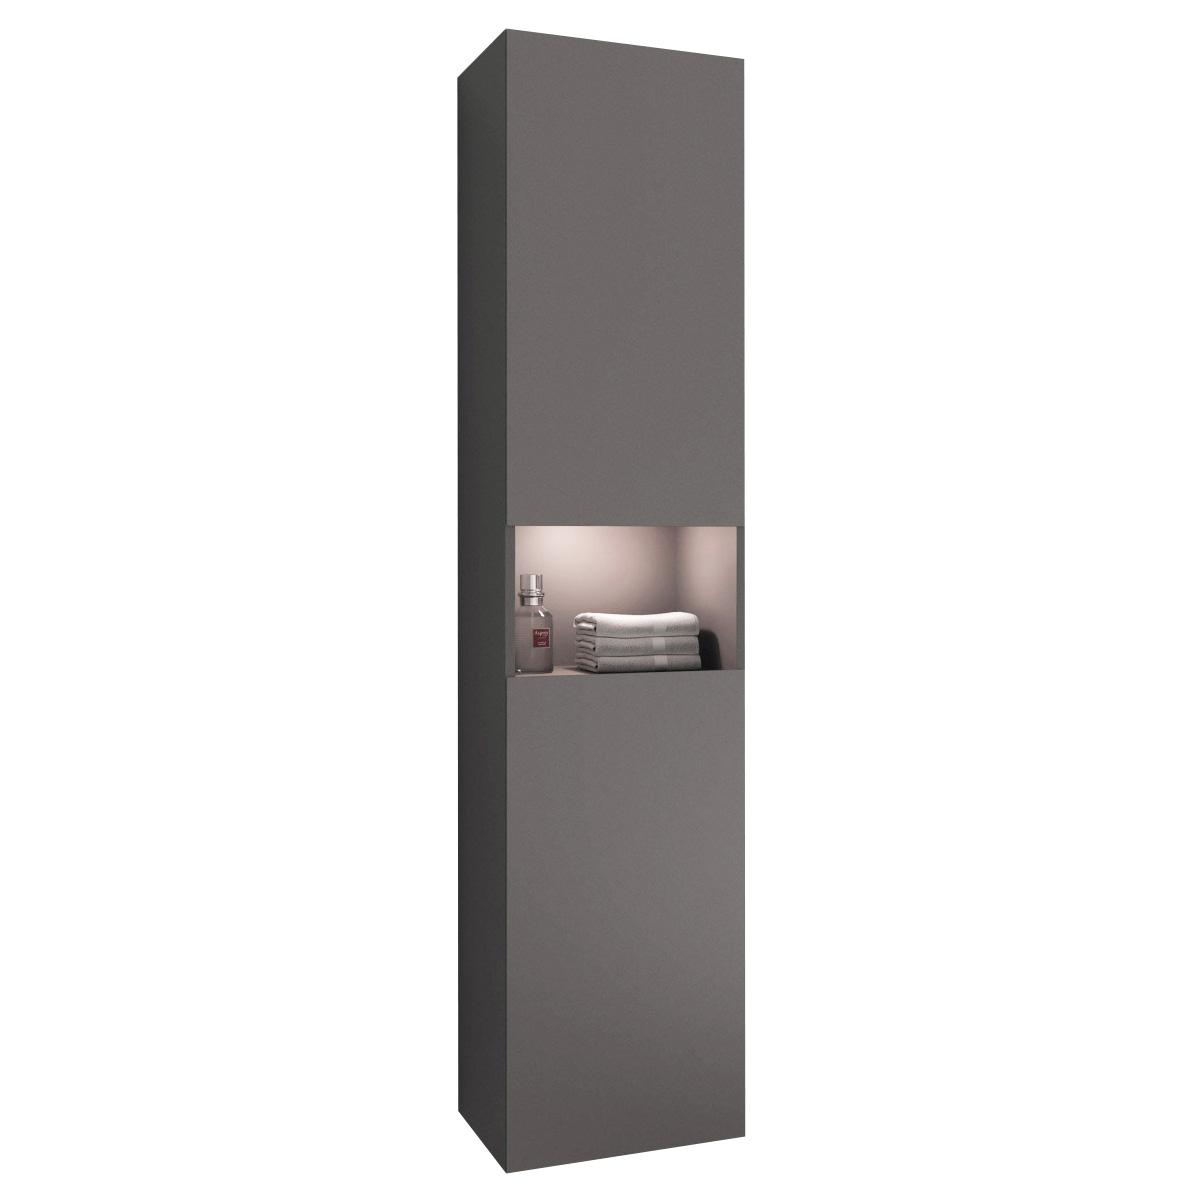 Шкаф для ванной Keuco Stageline 32831290102 инокс матовый с подсветкой, цвет серый - фото 1